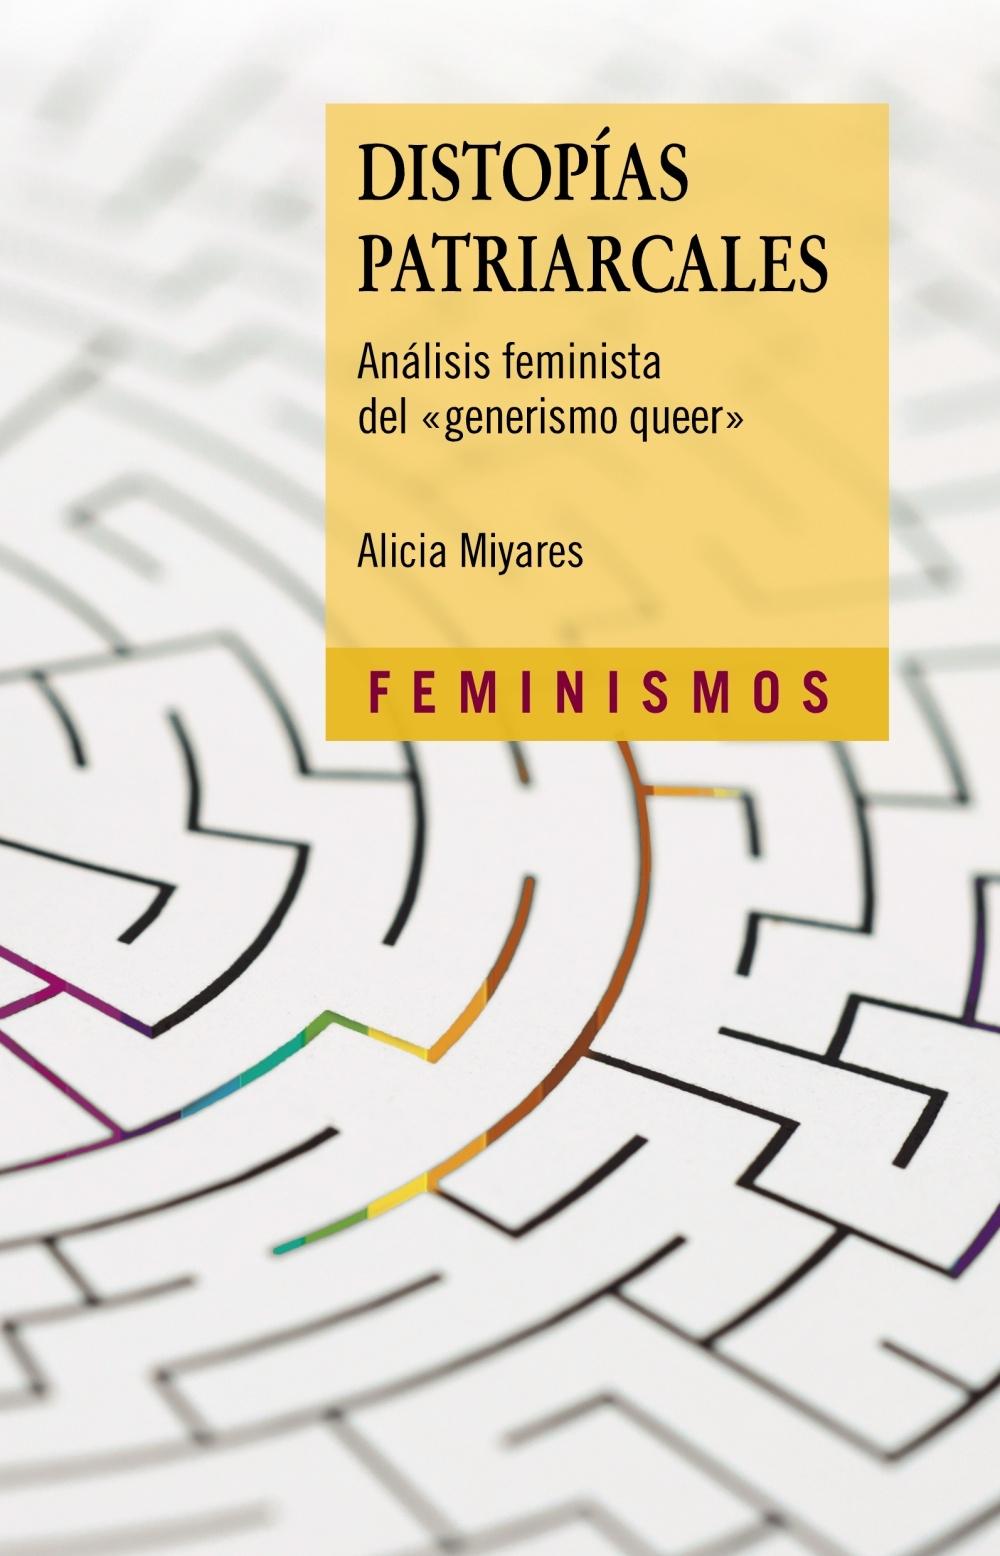 Distopías patriarcales "Análisis feminista del 'generismo queer'". 